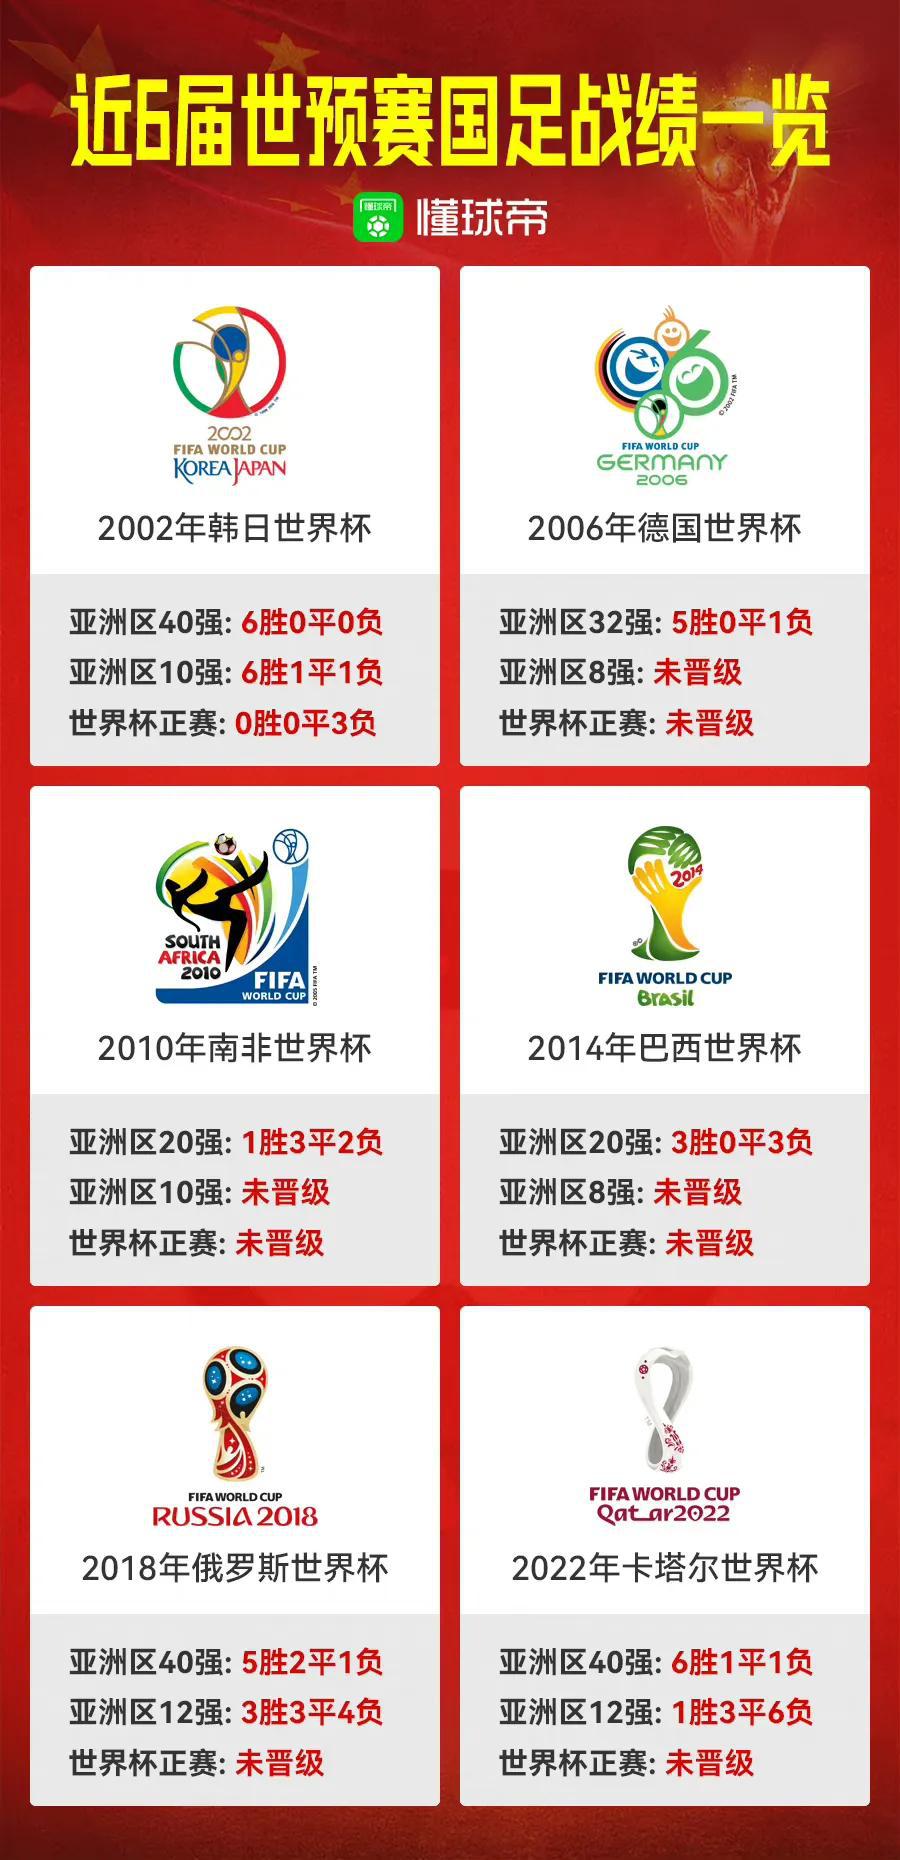 懂球帝发布的中国男足20年成绩单...2026年我们能进世界杯吗？

看得中国球(1)